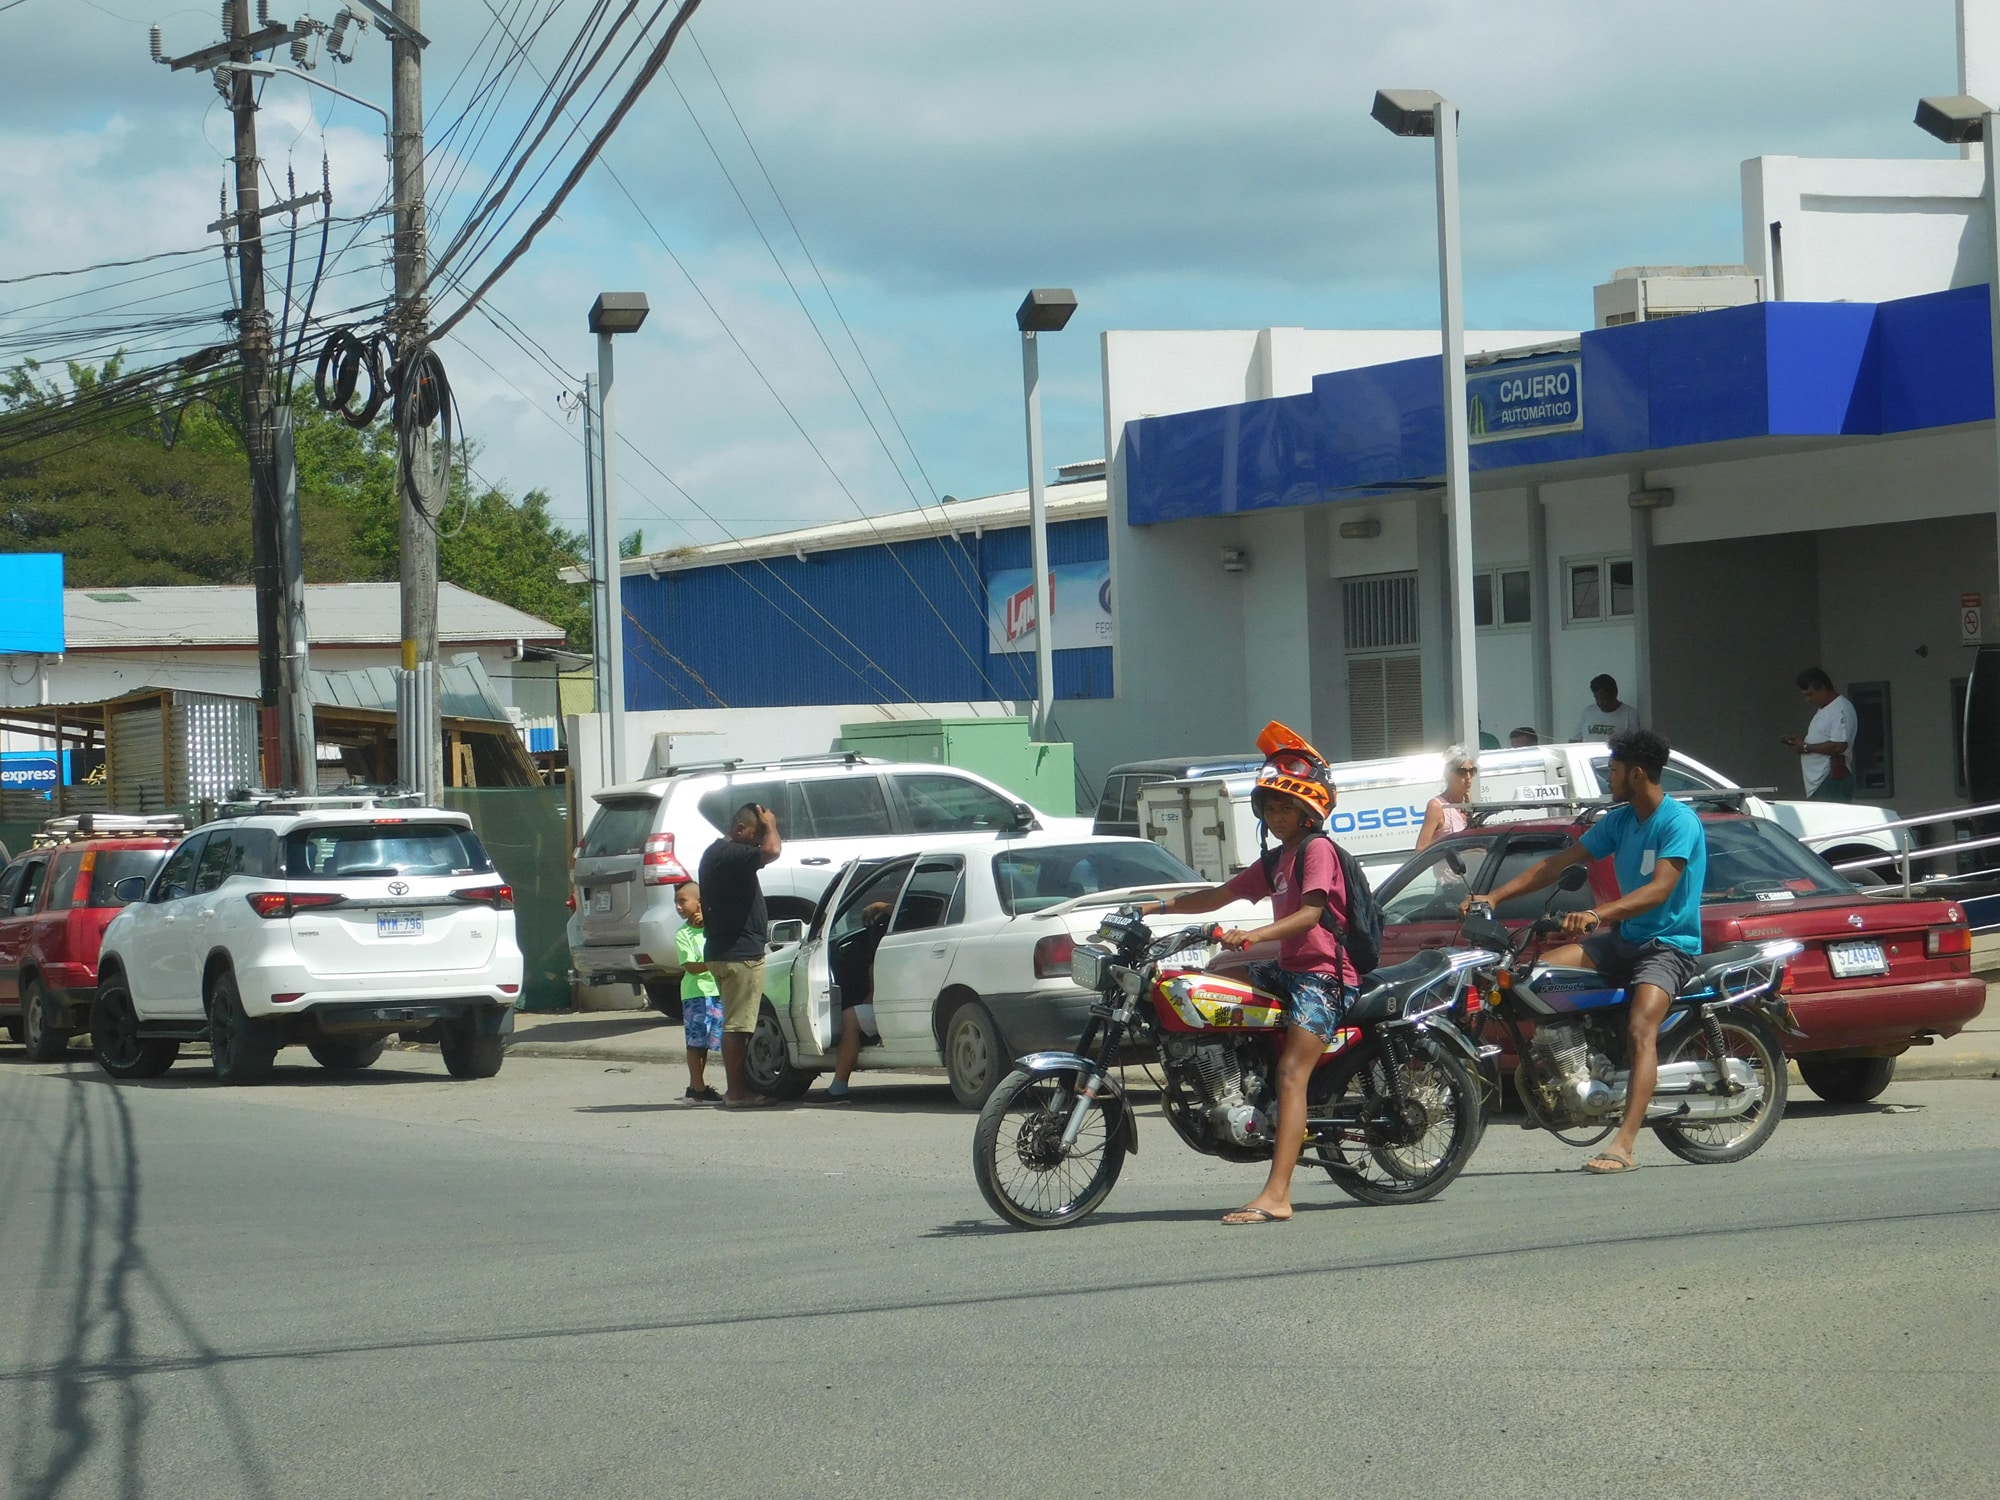 Hombres entre 19 y 29 años sufren más accidentes, lesiones y muertes en las carreteras de Costa Rica